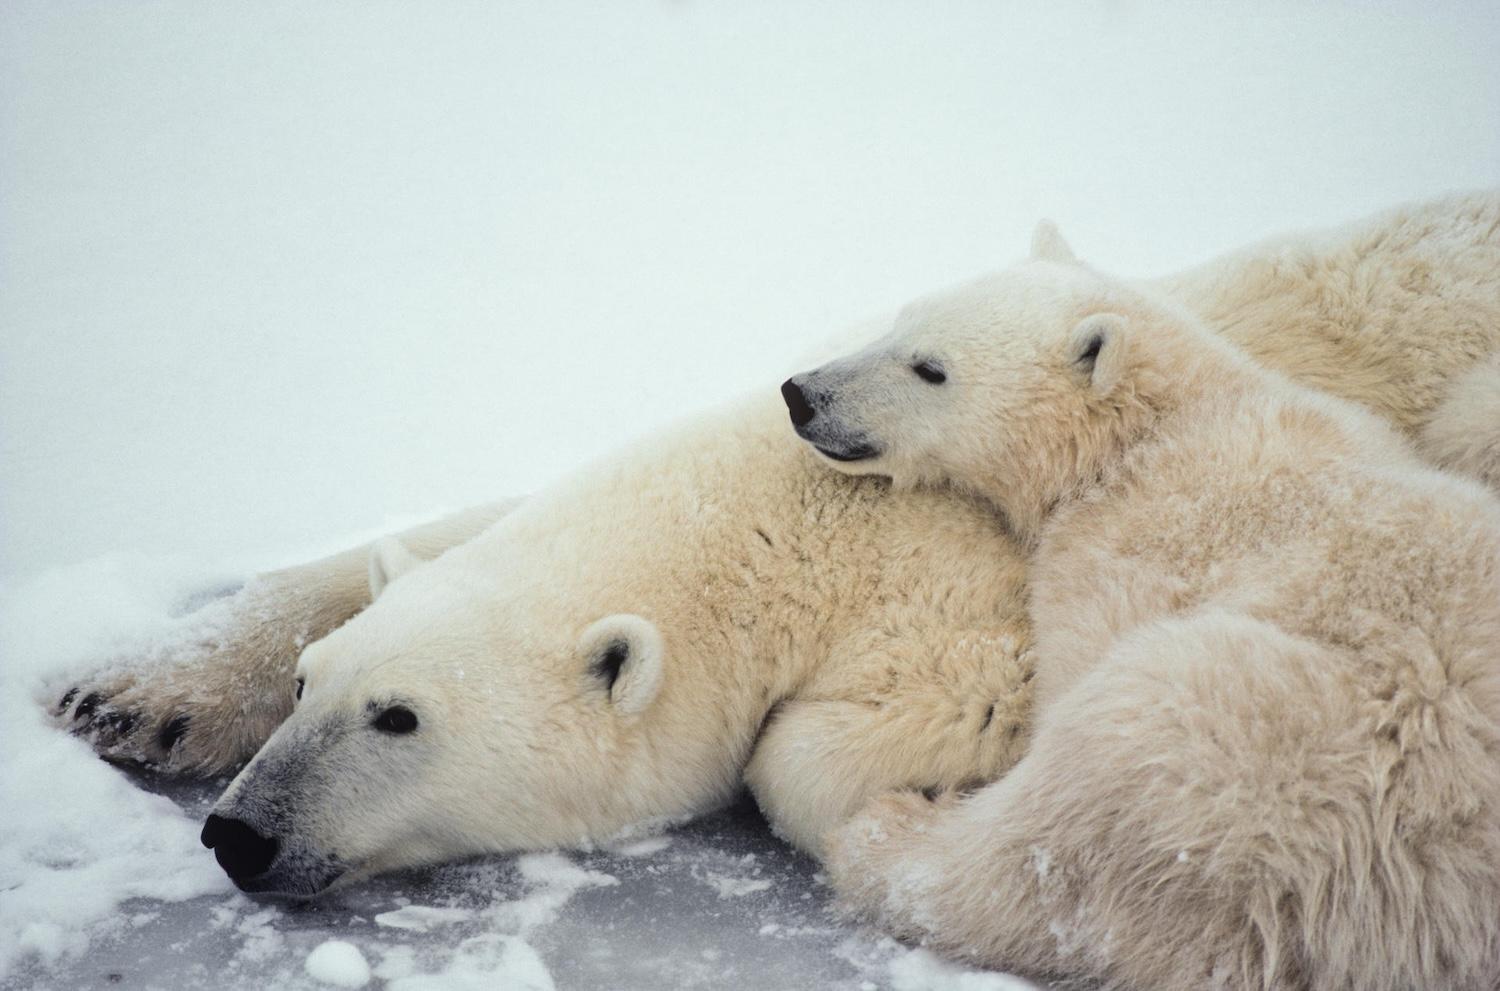 Polar bears call Quttinirpaaq National Park in Nunavut home.